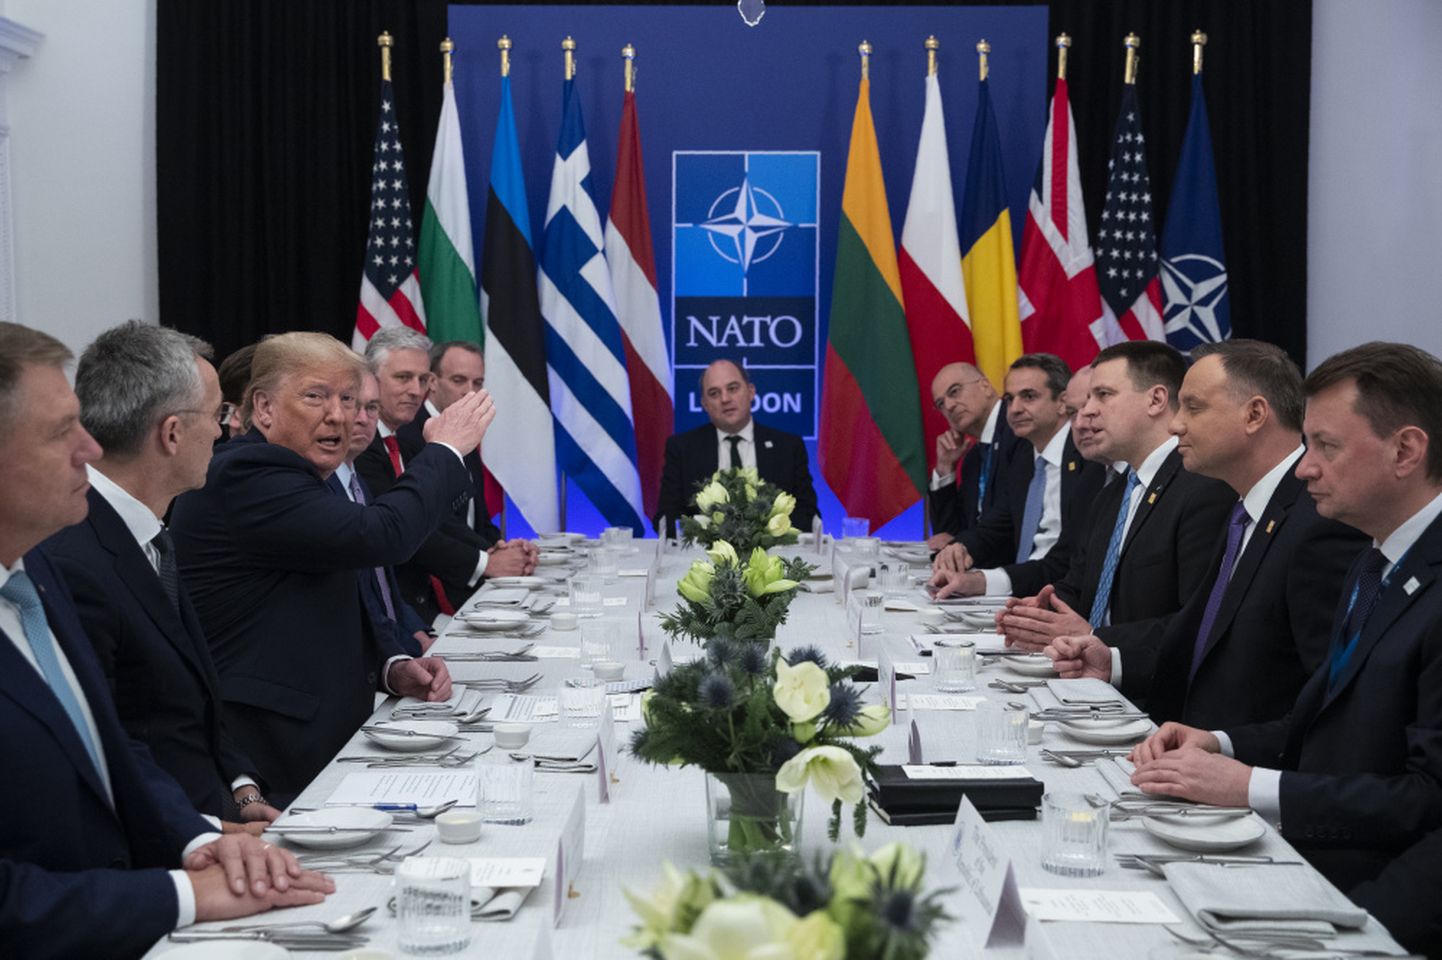 Дональд Трамп на ужине со "странами-двухпроцентниками"